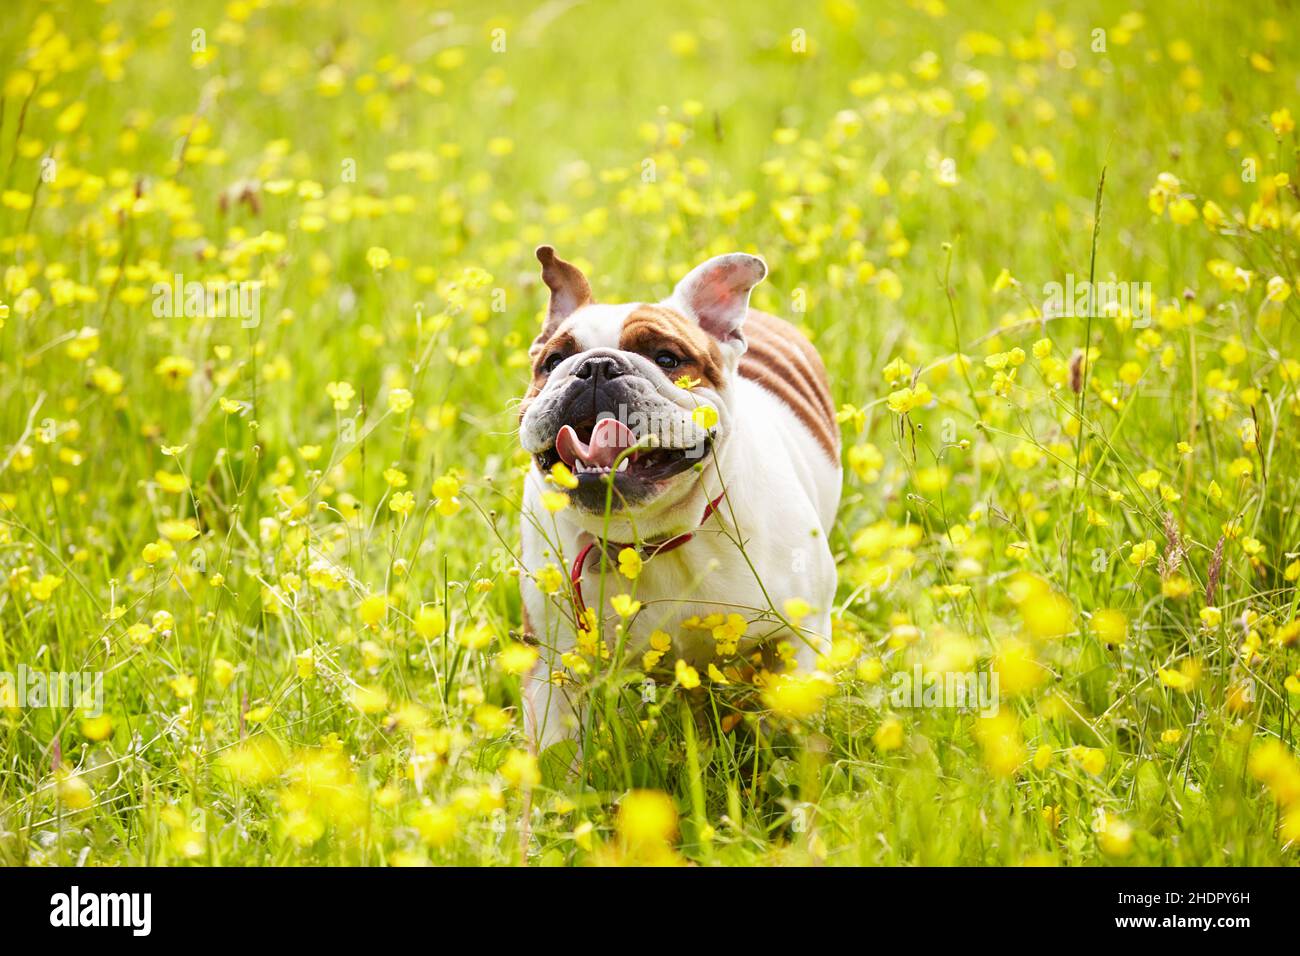 running, dog, bulldog, jogging, dogs, bulldogs Stock Photo